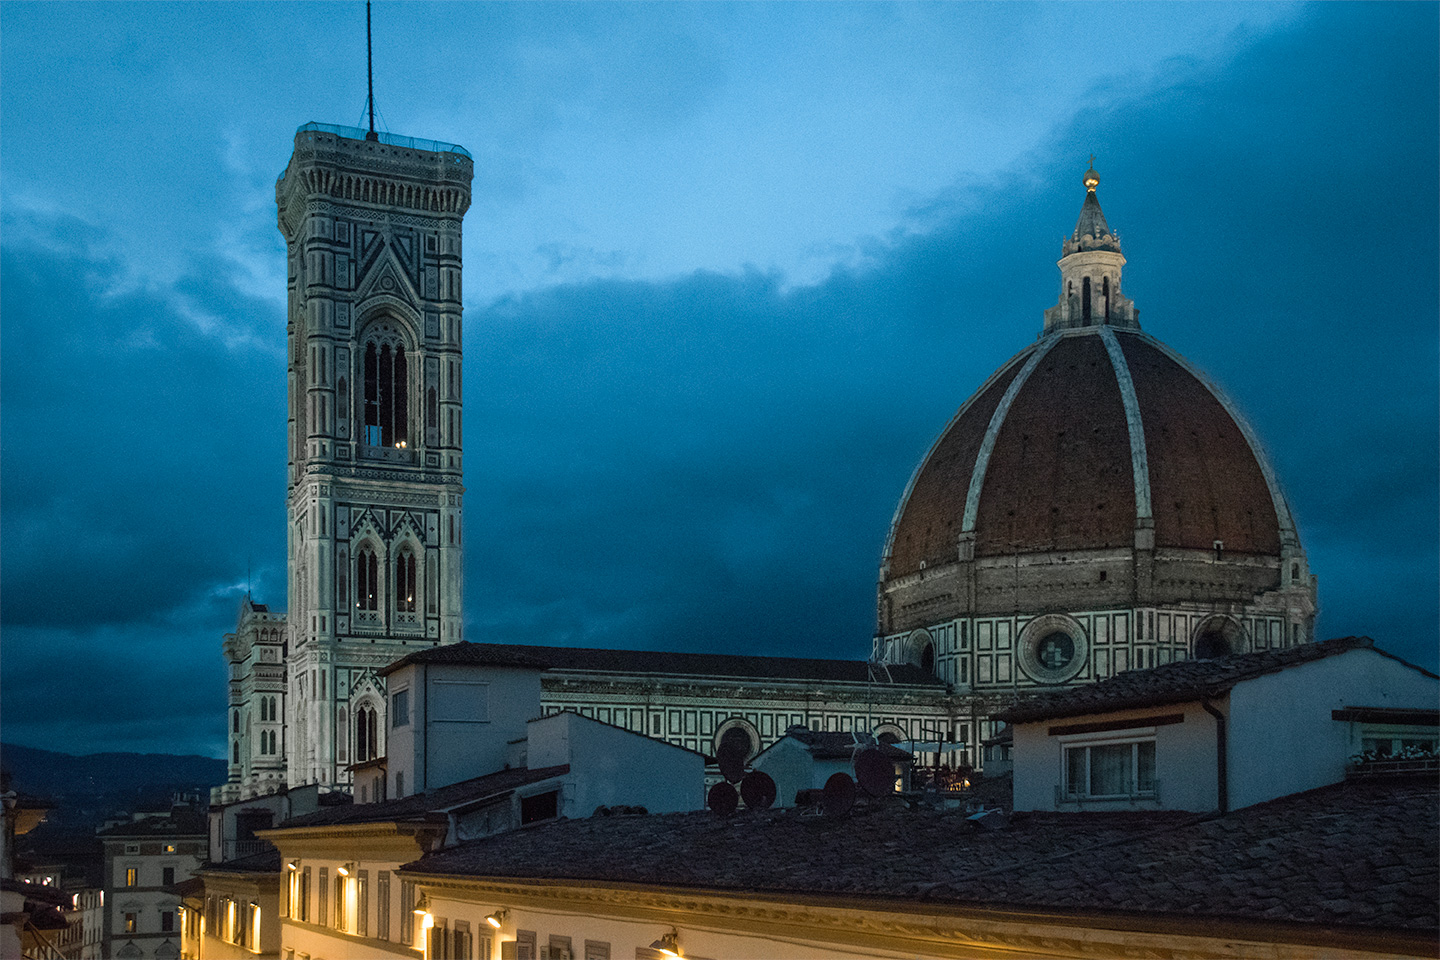 Duomo at dusk